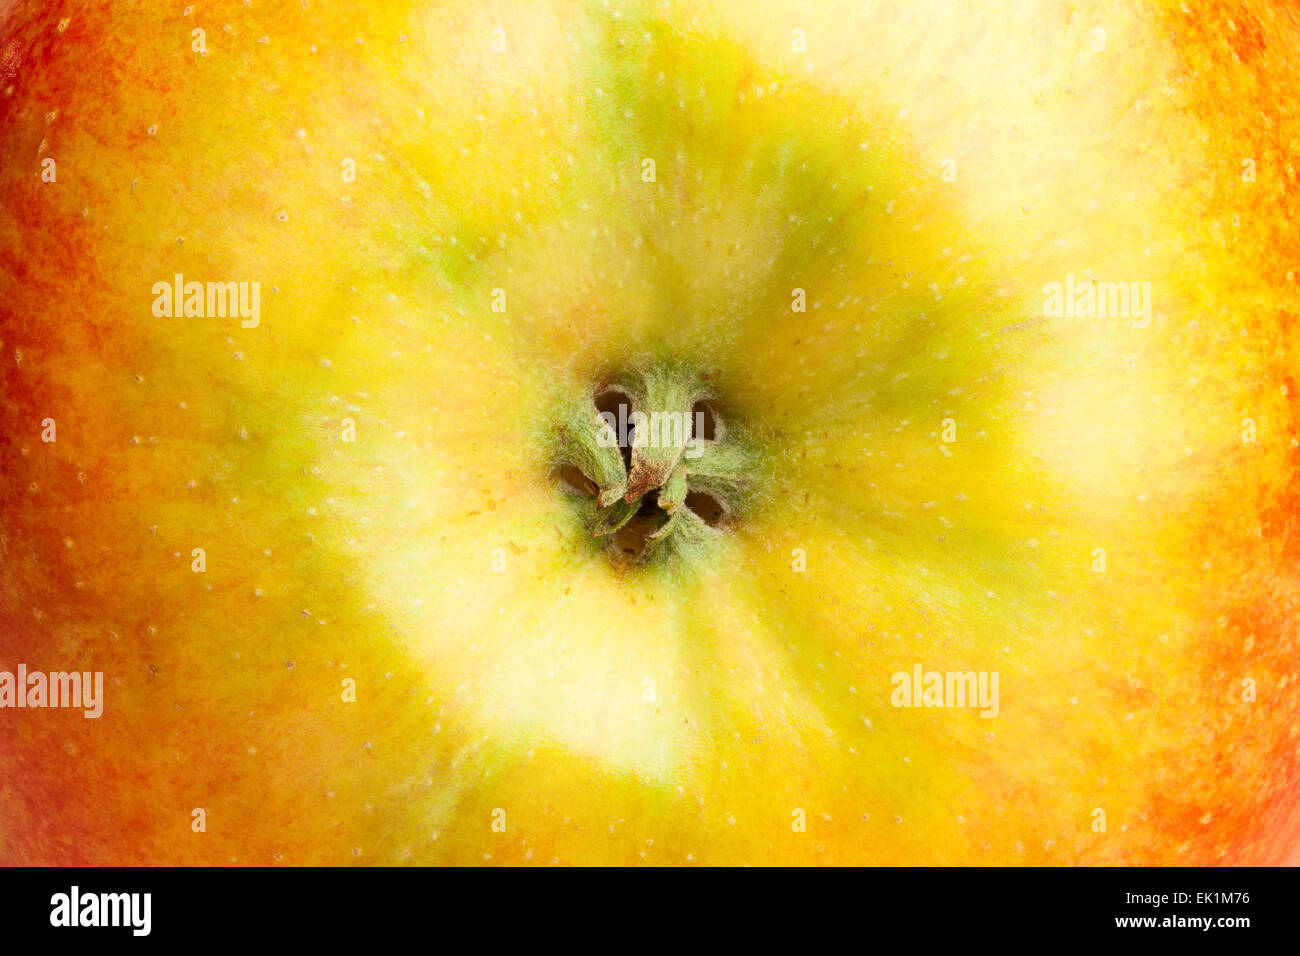 Apfel-Makro-Nahaufnahme Stockfoto